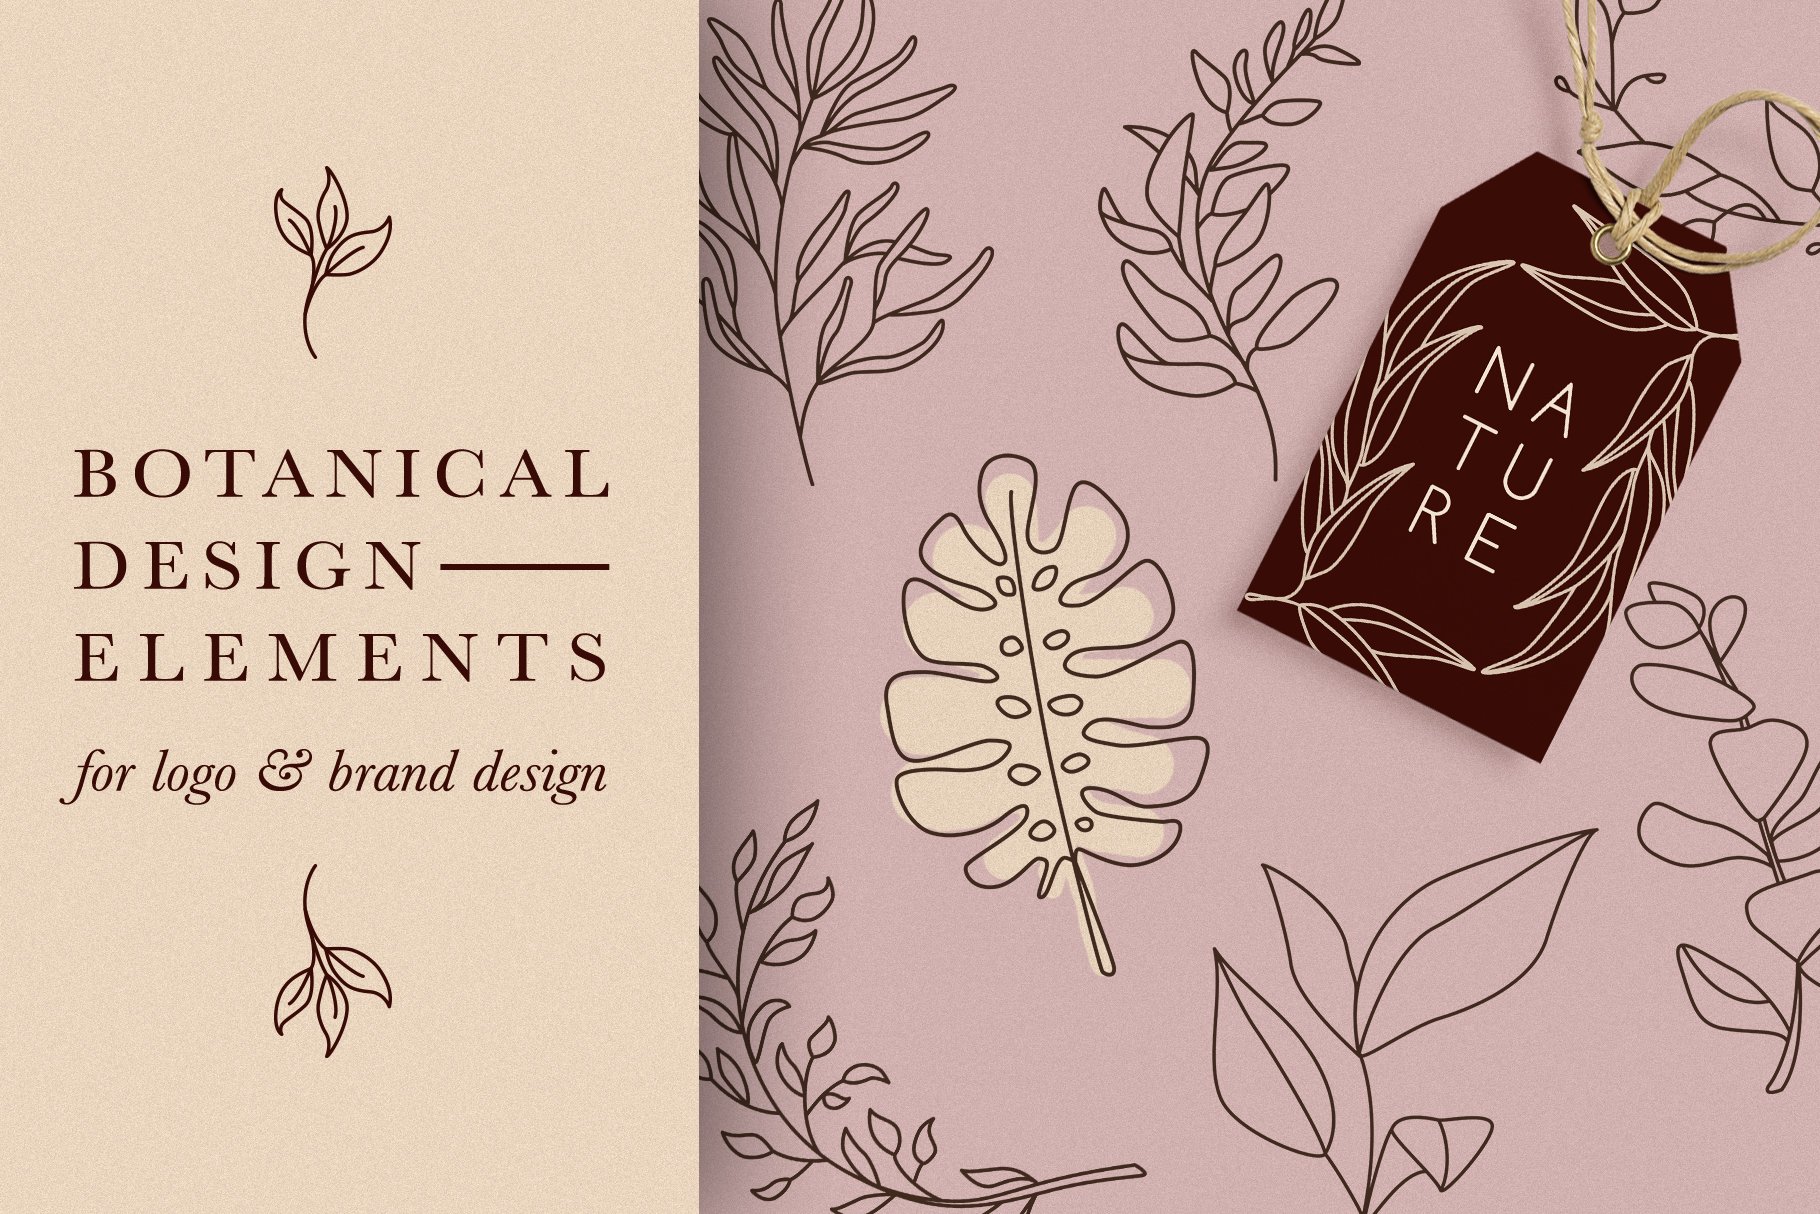 Botanical Elements for Logo Design cover image.